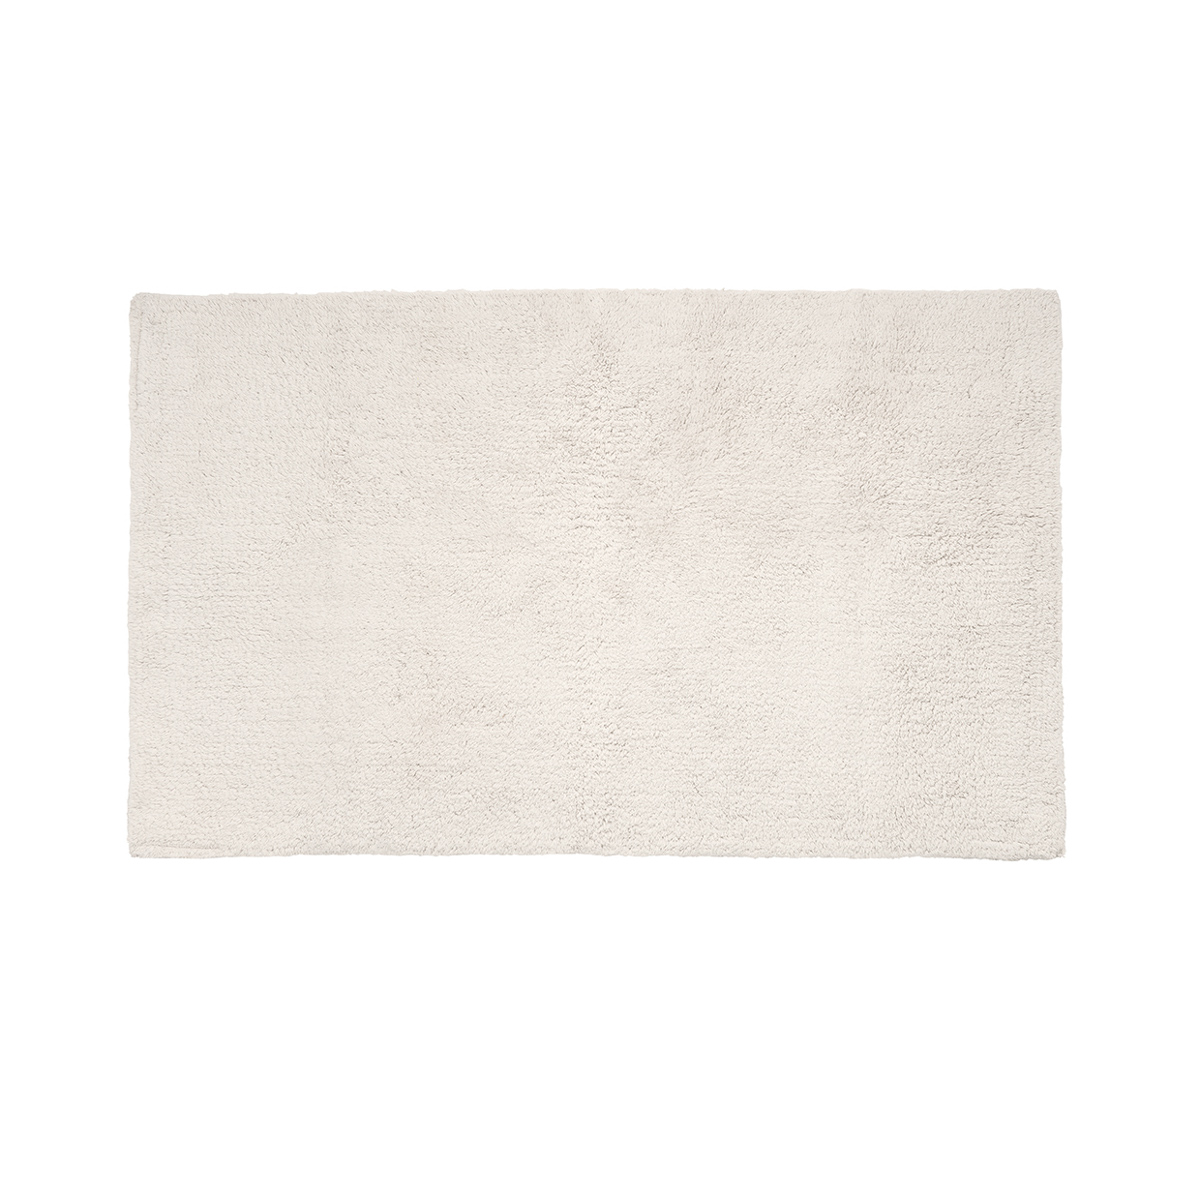 Badematte -TWIN- Moonbeam 60 x 100 cm. Material: Baumwolle. Von Blomus.